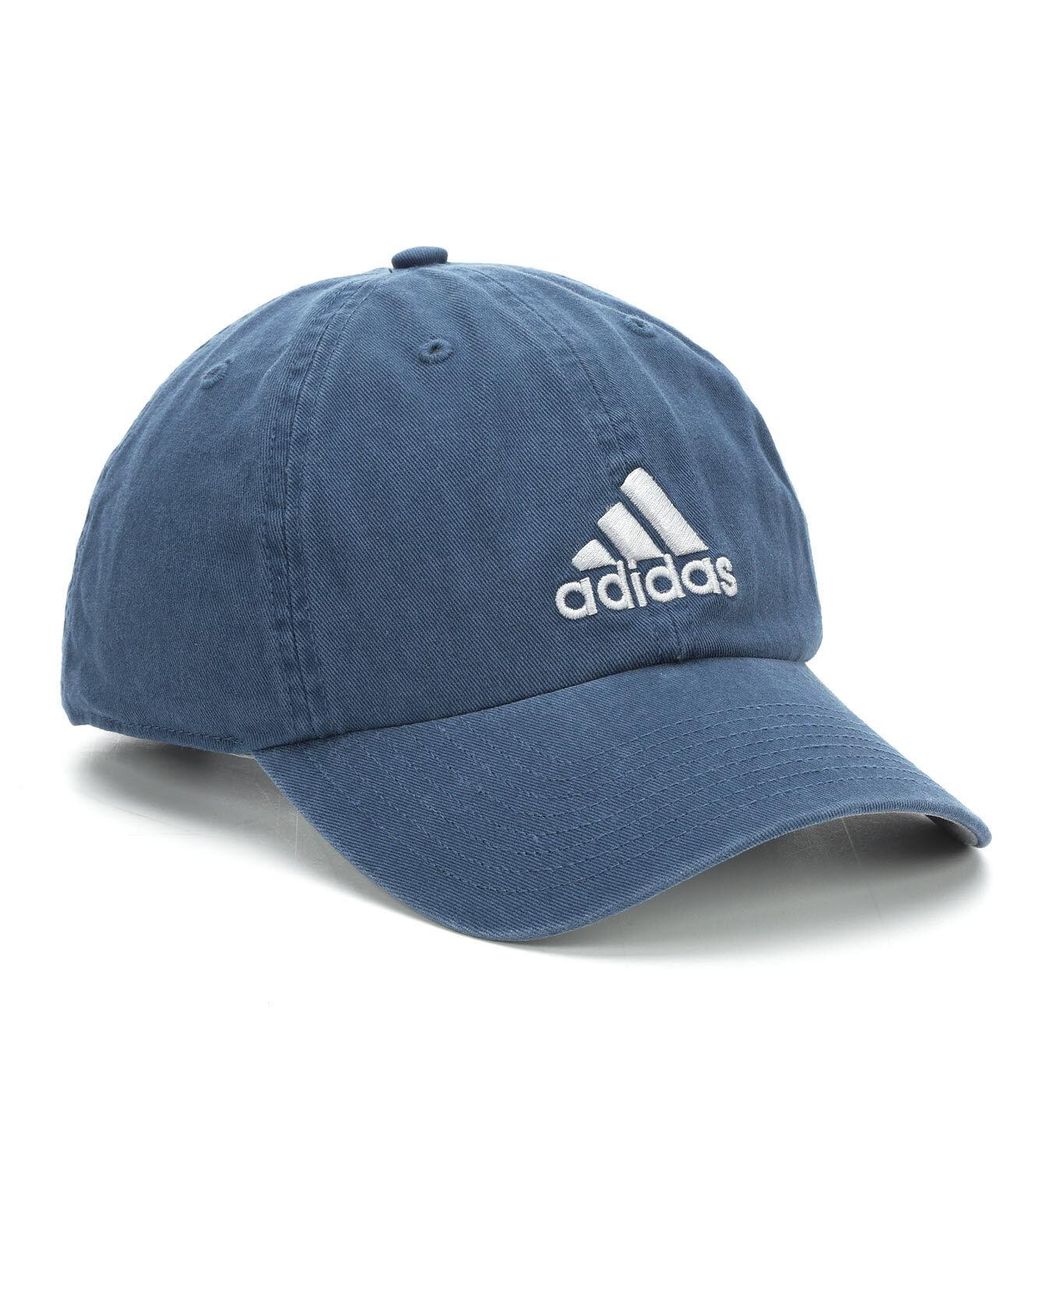 adidas blue baseball cap